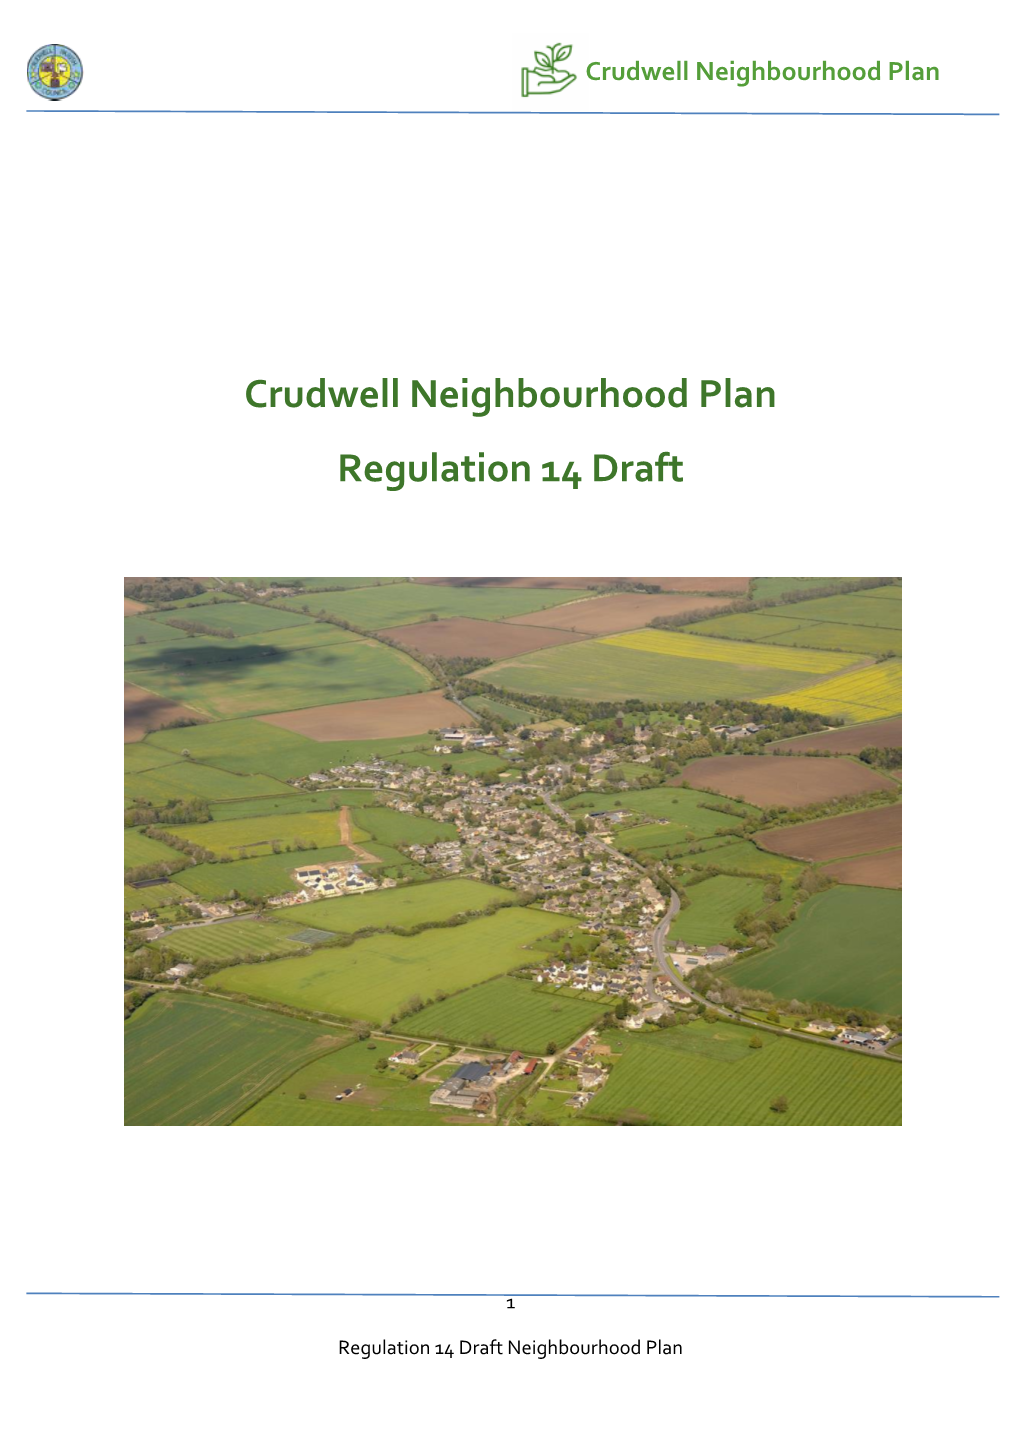 Crudwell Neighbourhood Plan Regulation 14 Draft